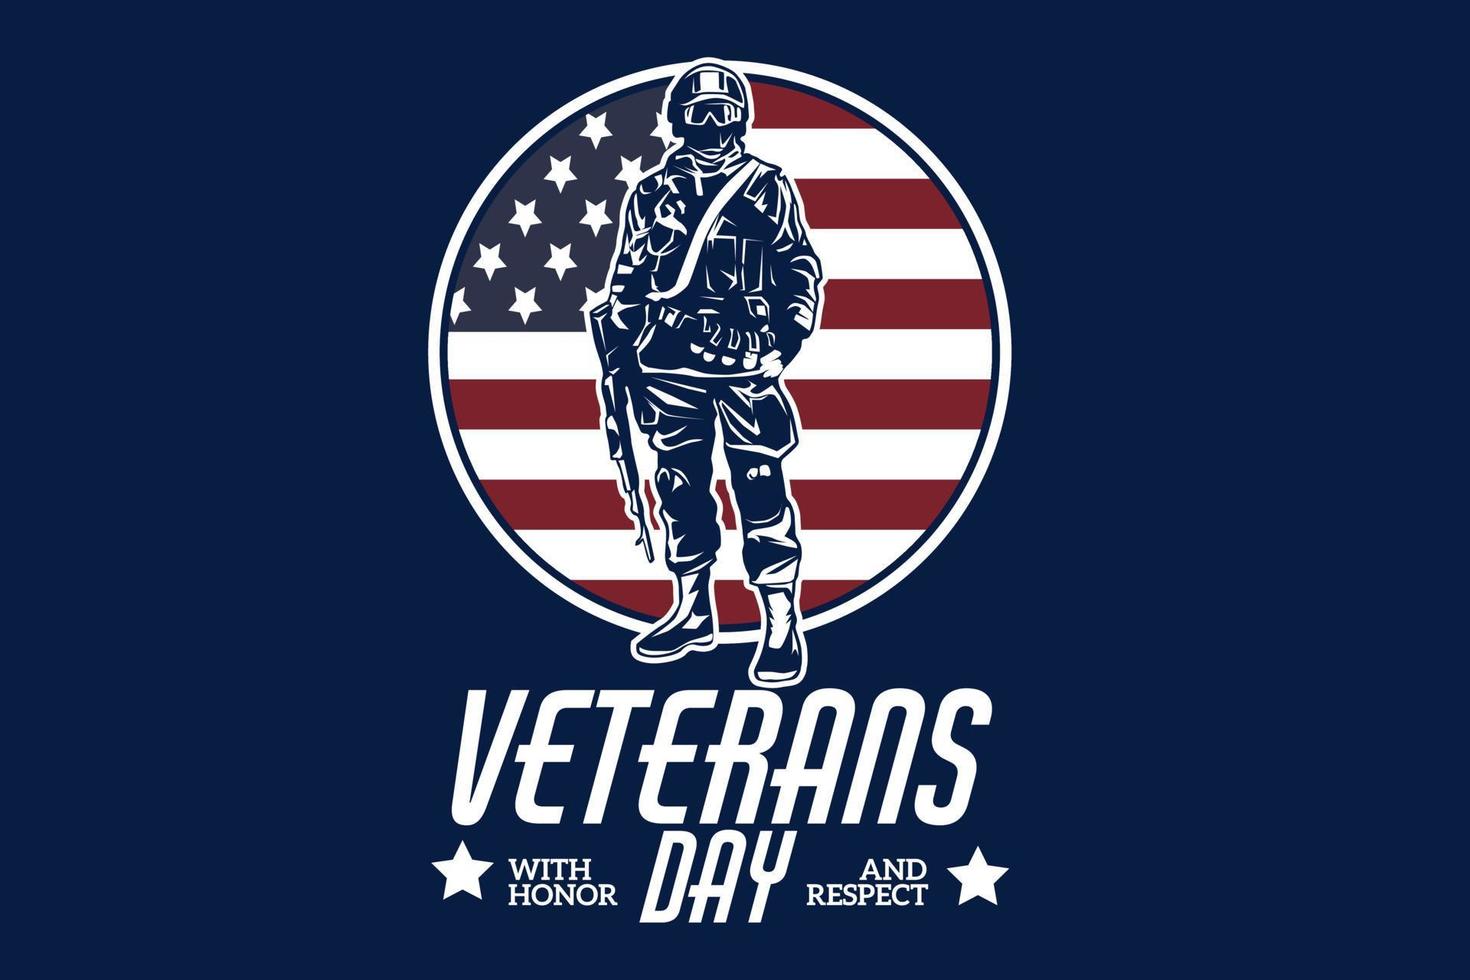 dia dos veteranos com design de silhueta de honra e respeito vetor